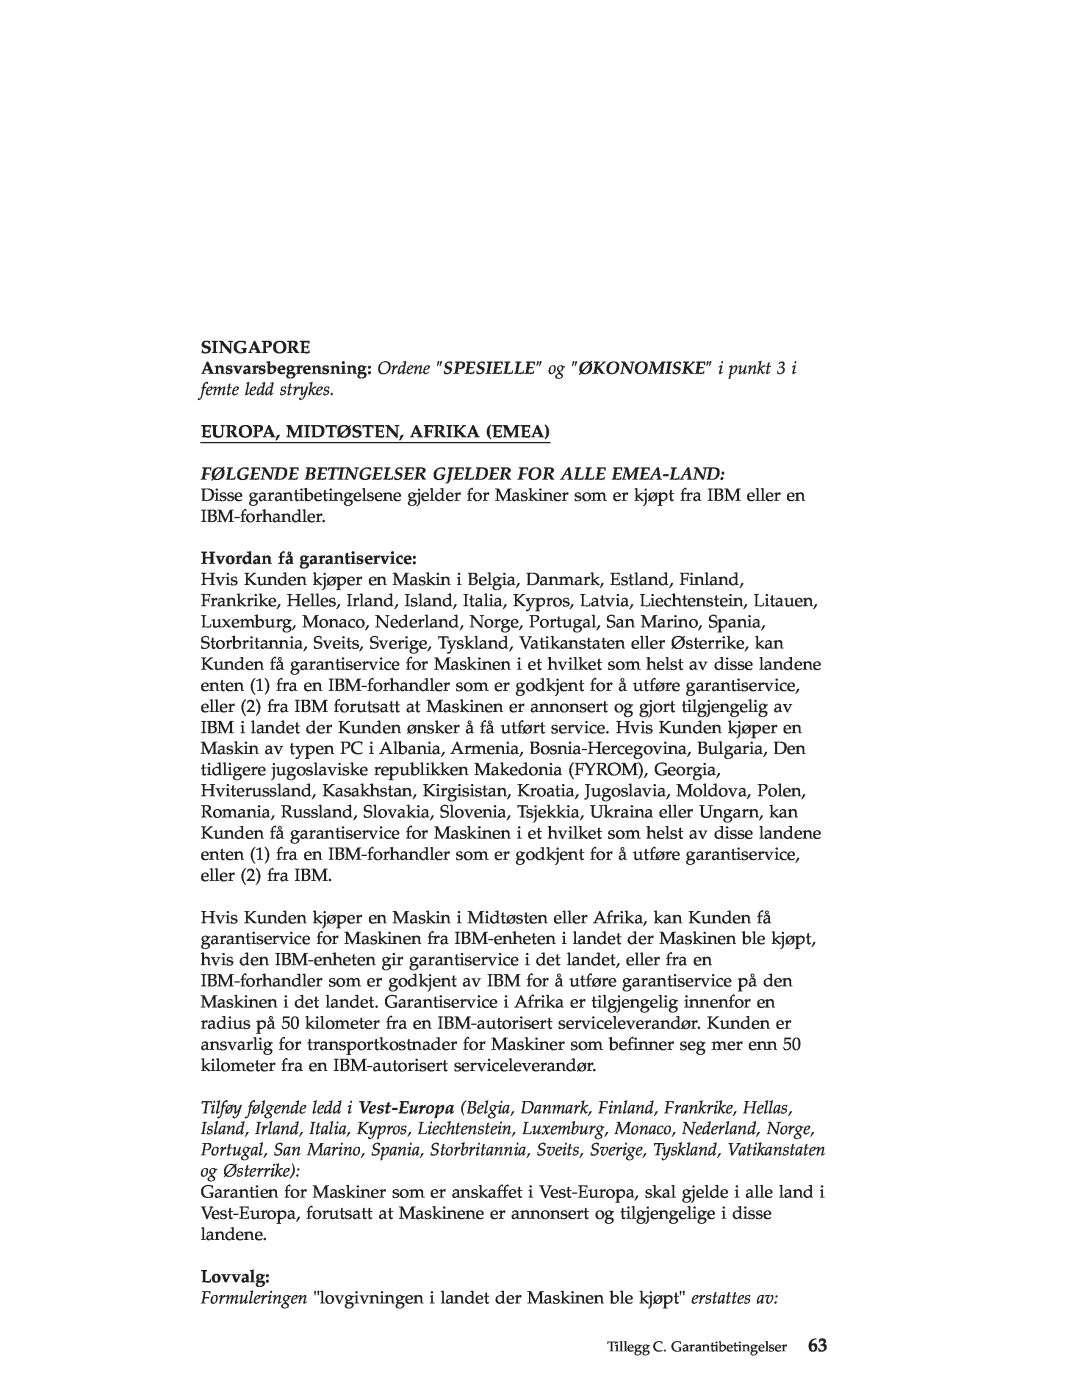 IBM R50 manual Singapore, Europa, Midtøsten, Afrika Emea, Følgende Betingelser Gjelder For Alle Emea-Land, Lovvalg 